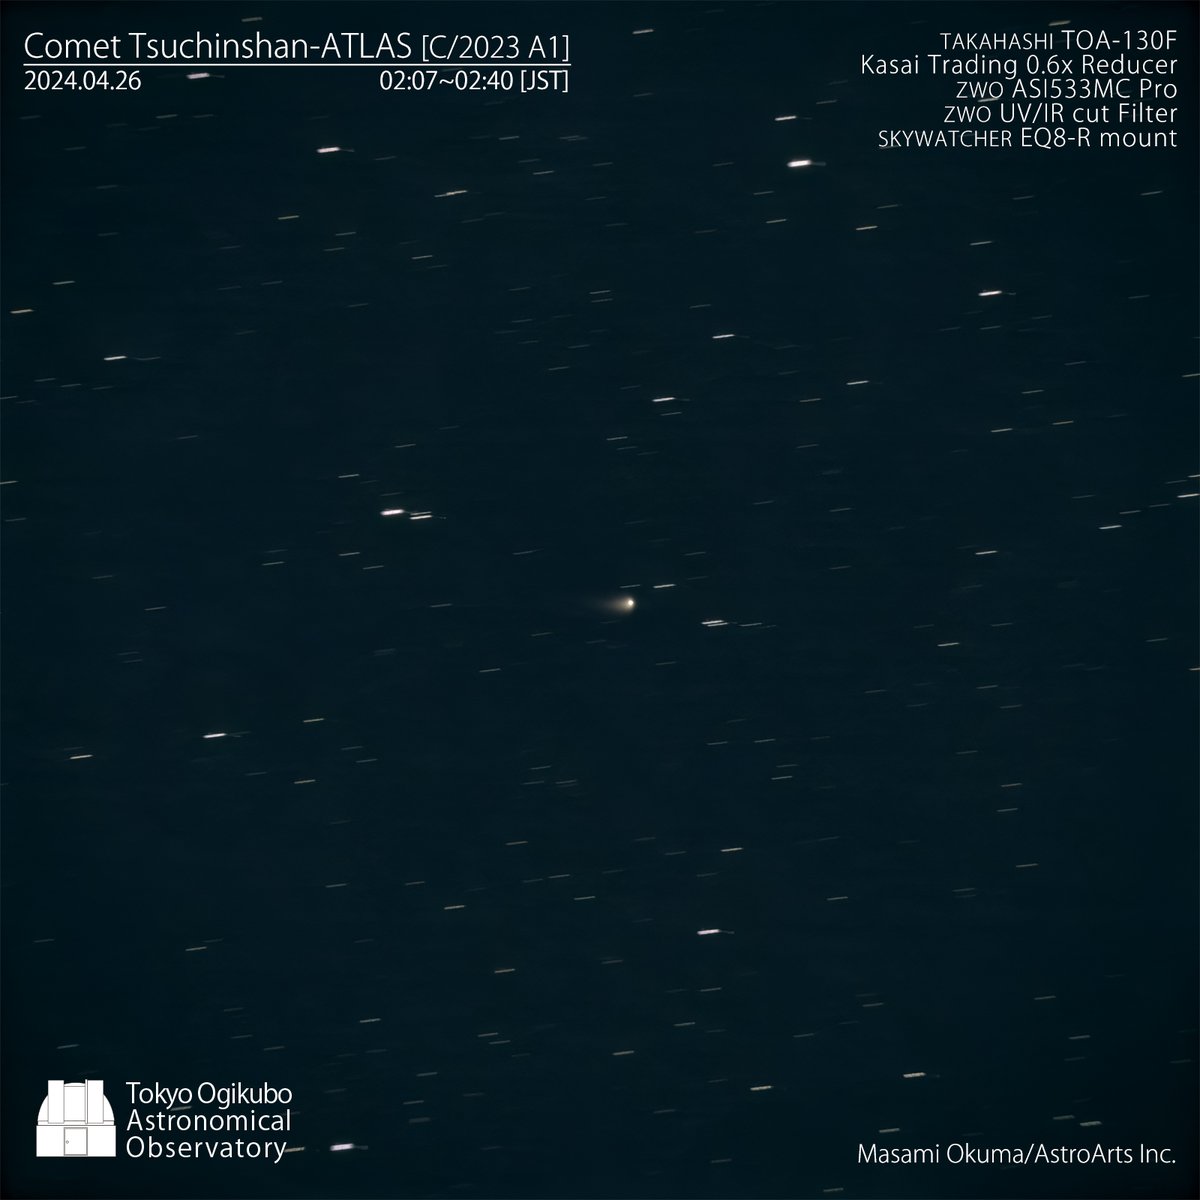 4月25日深夜（26日未明）のC/2023 A3 Tsuchinchan-ATLAS彗星。月明かりがあるが東方向に伸びる尾が確認できる。
＃Cometobservation ＃彗星観察
#TsuchinchanATLAS